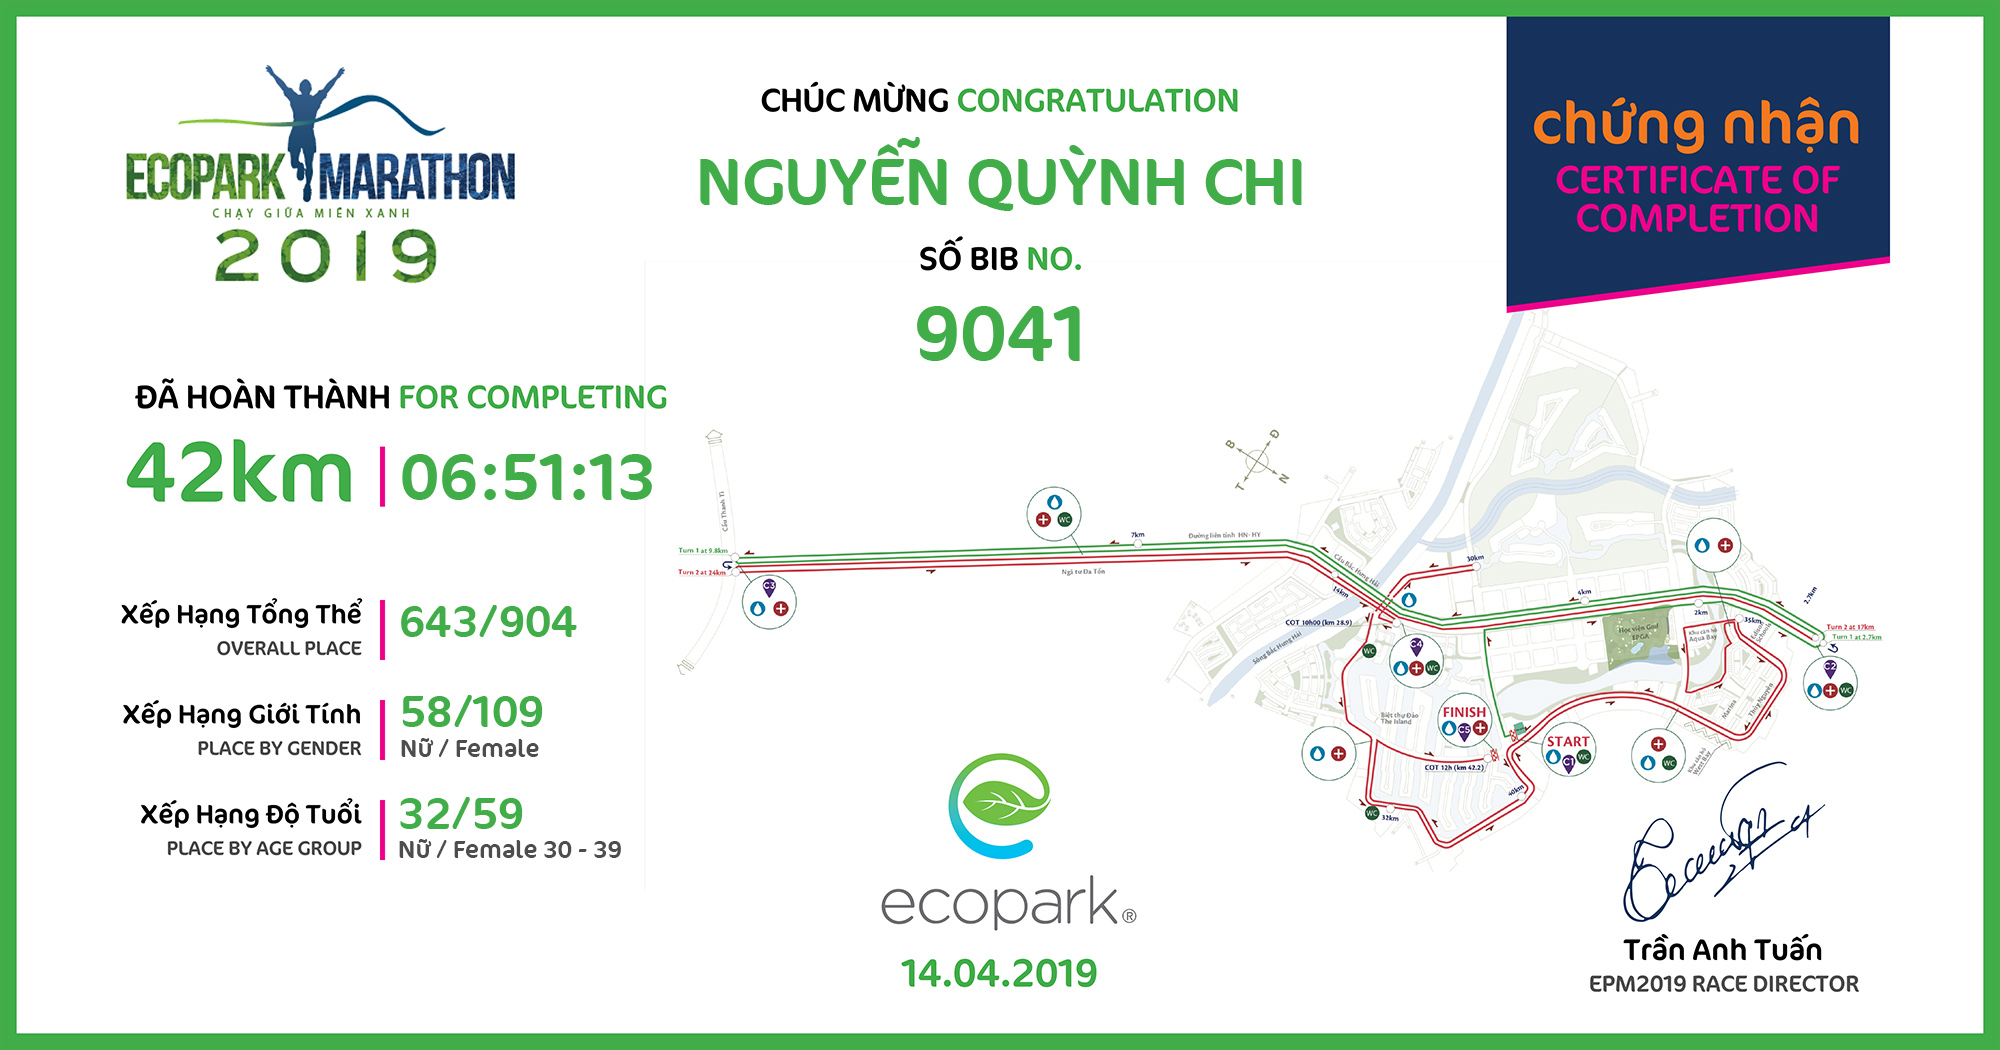 9041 - Nguyễn Quỳnh Chi